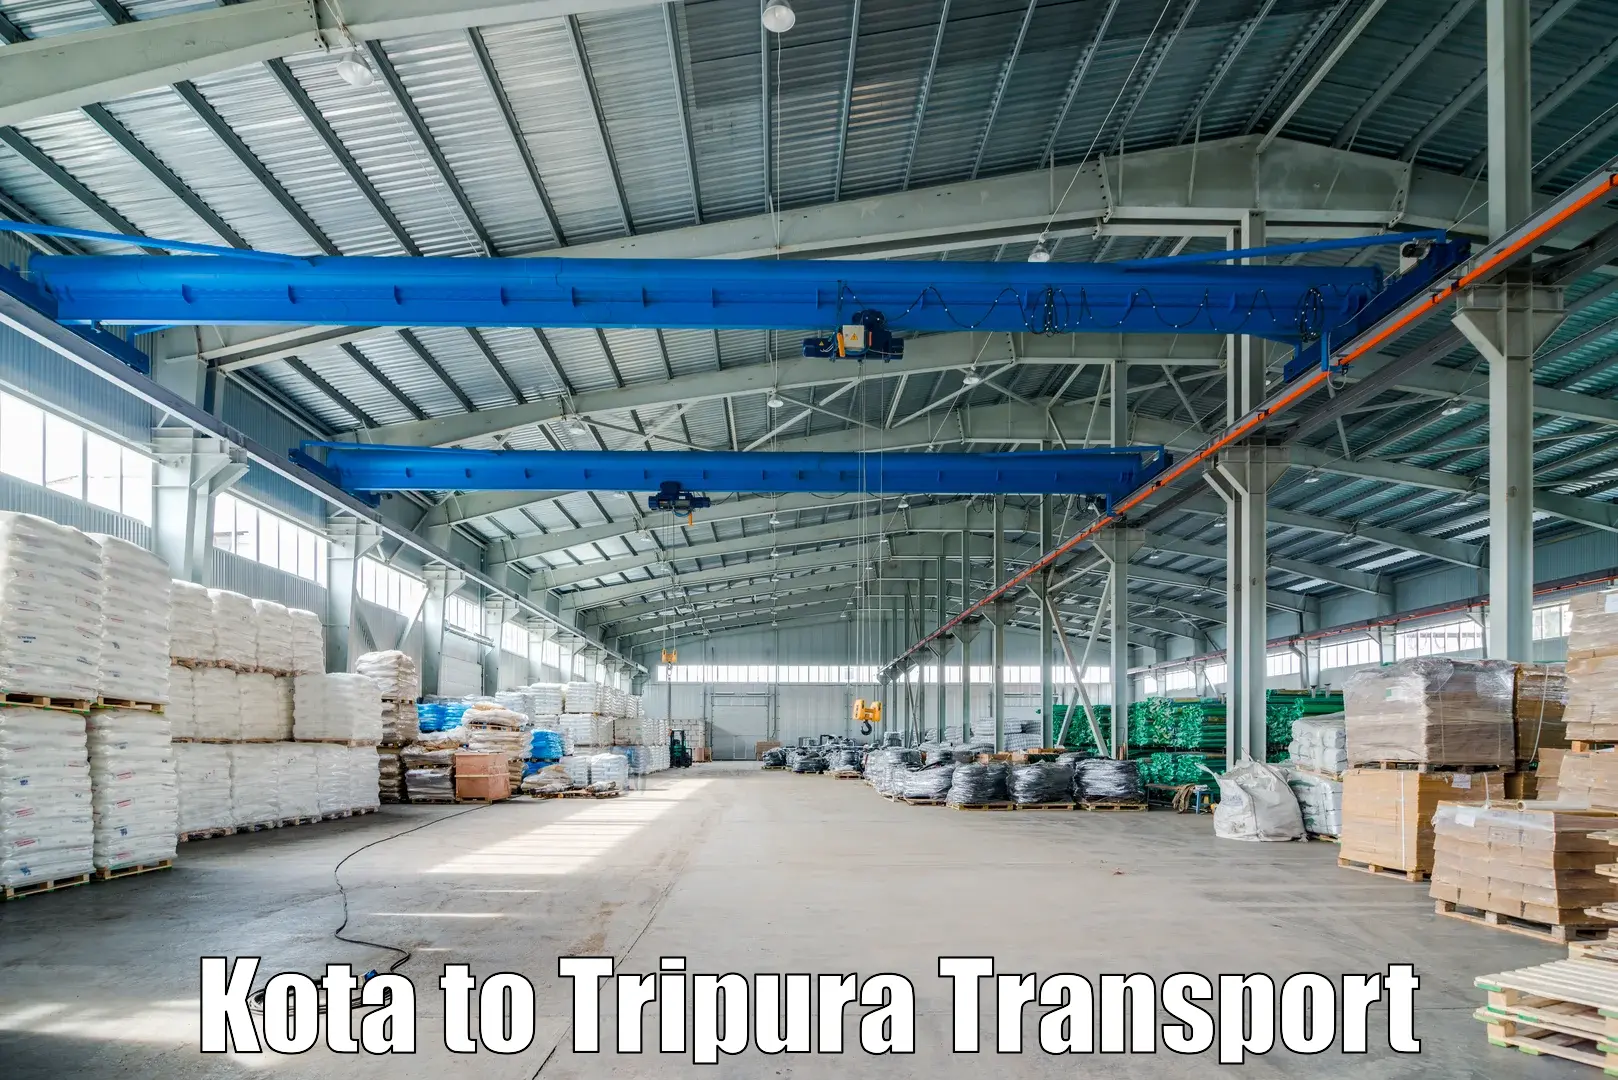 Intercity transport Kota to IIIT Agartala